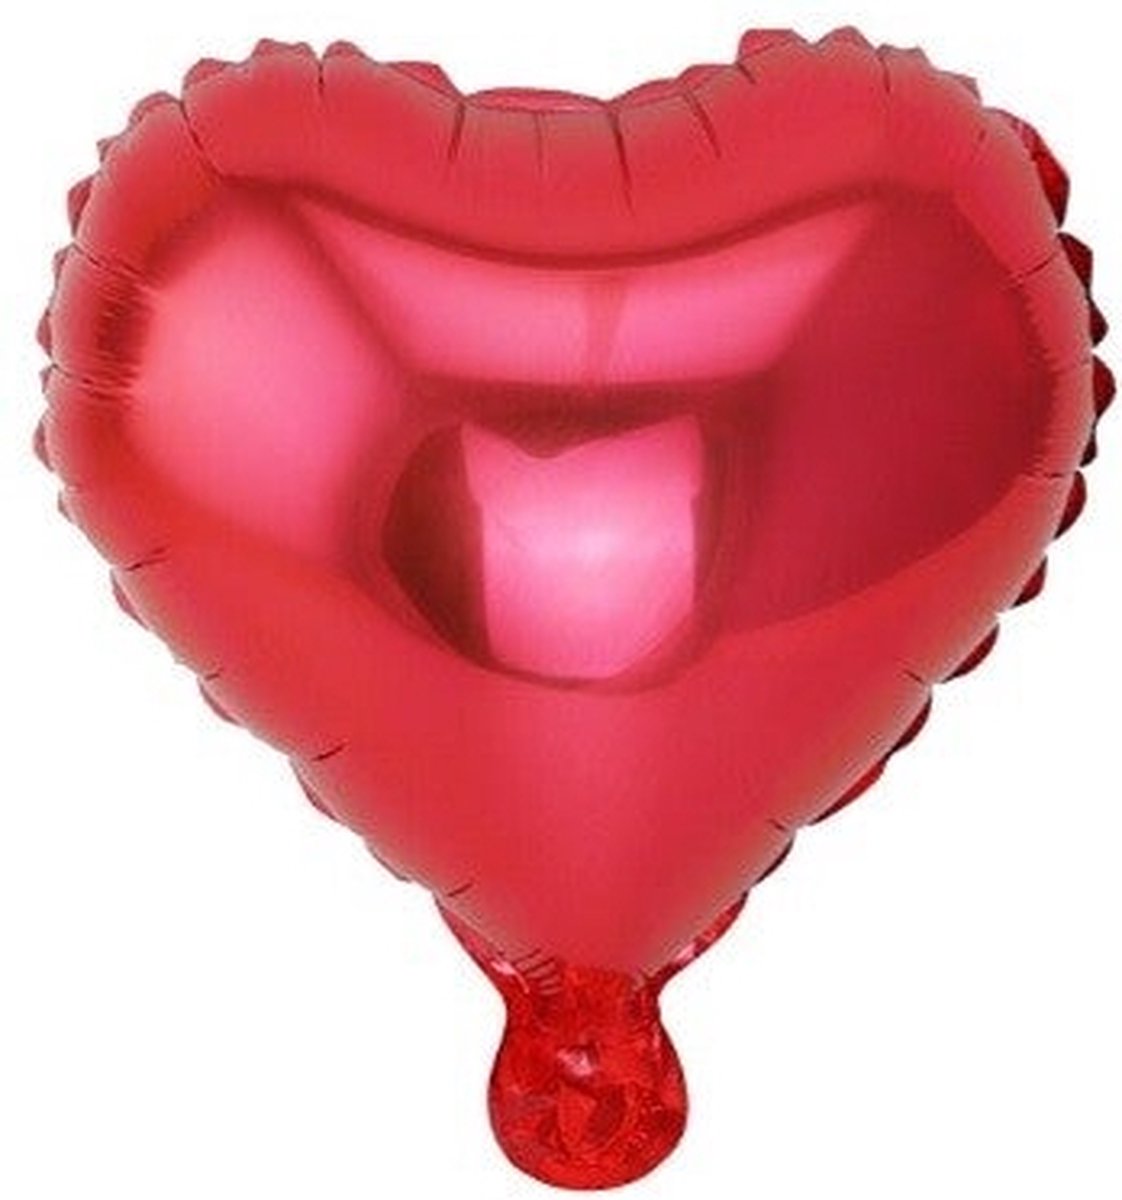 Groot Rood Hart ballon - 81cm - Moederdag cadeautje - Love - Folie ballon - Valentijn - Liefde - Huwelijk - Verassing - Ballonnen - Hart - Helium ballon - Valentijn cadeautje voor hem- Valentijn cadeautje voor haar - Cadeau